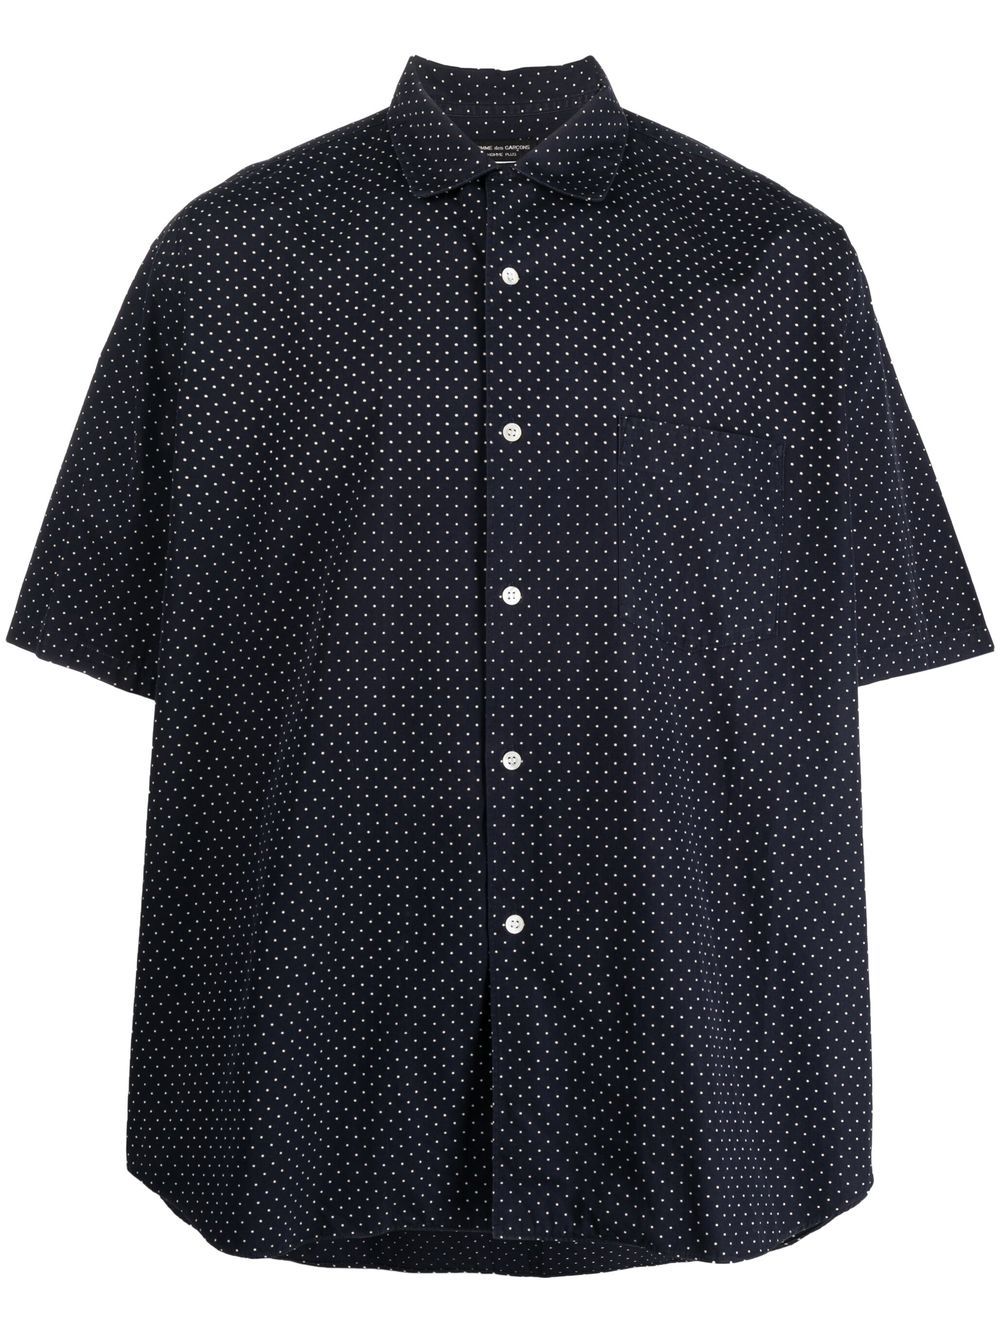 1990s polka dot short-sleeved shirt